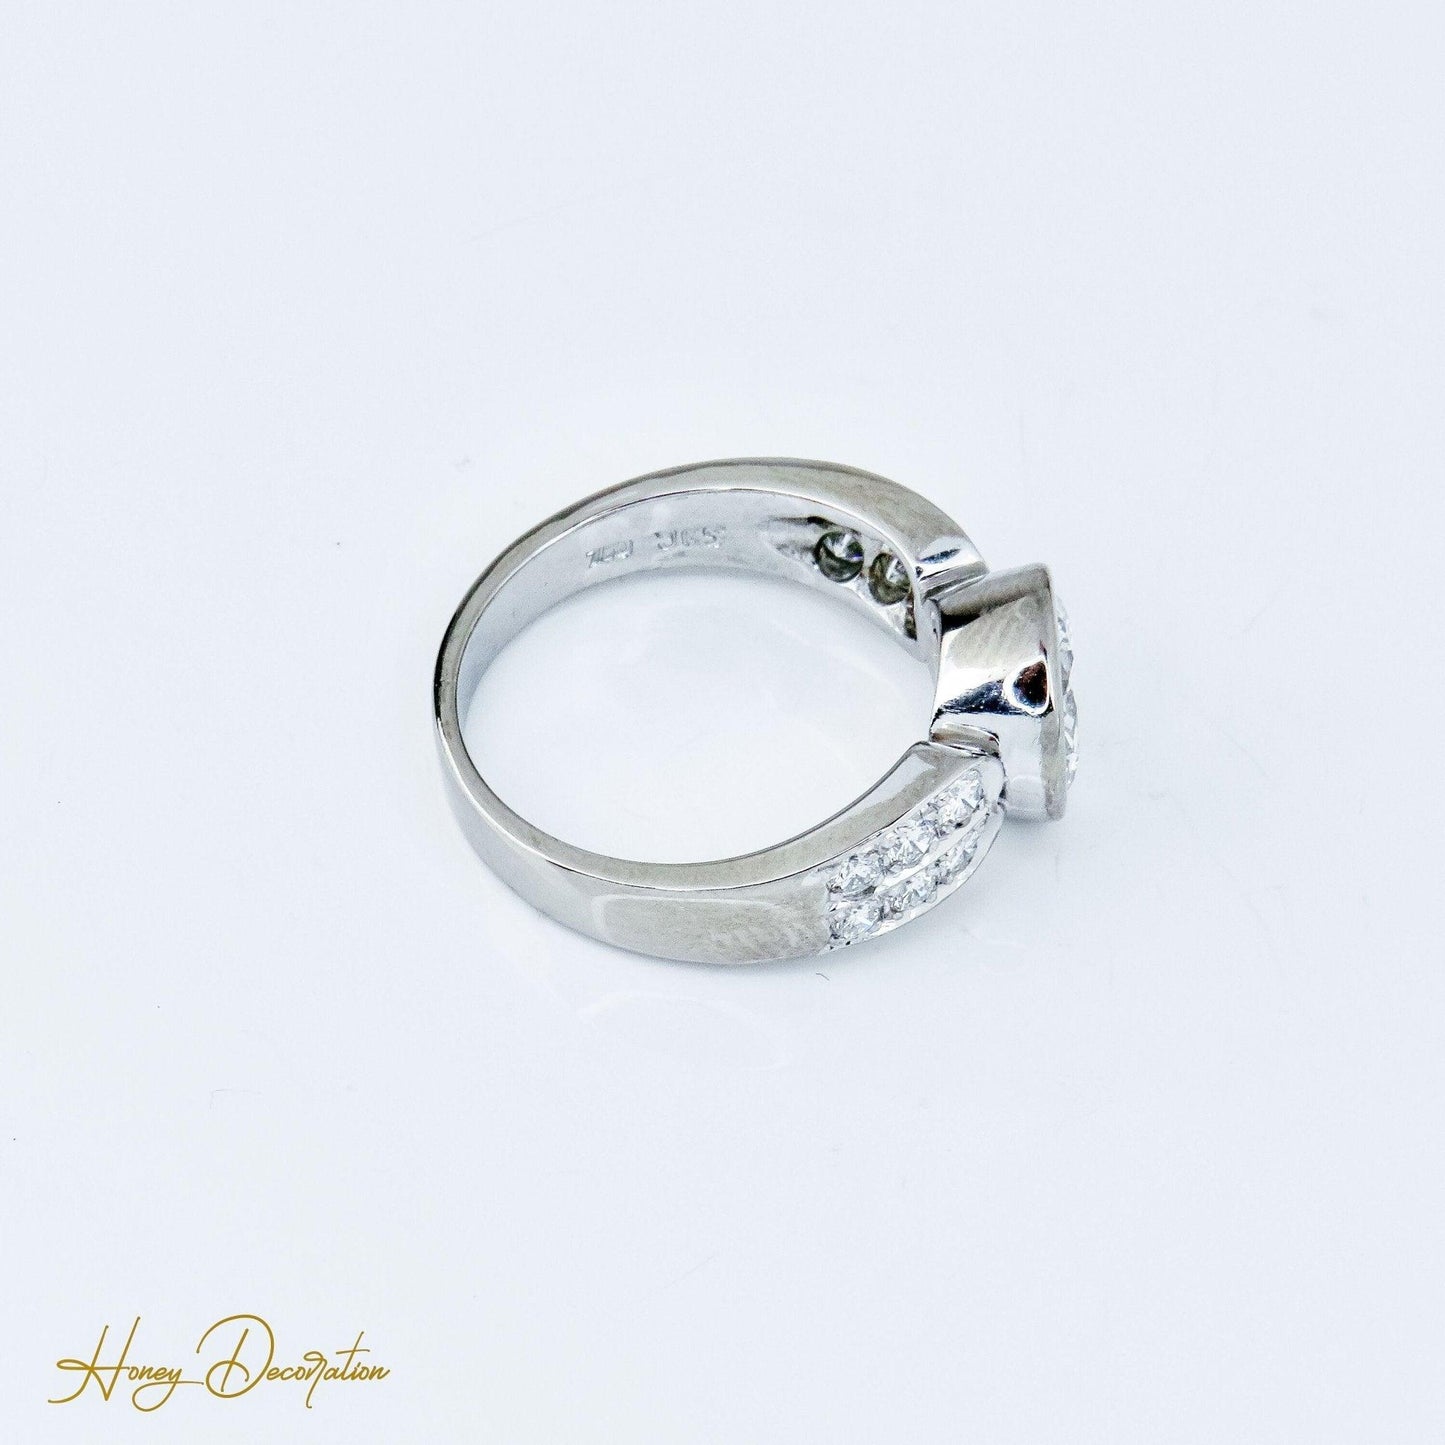 Luxuriöser Halo-Ring aus Weißgold mit großem Solitär - Honey Decoration